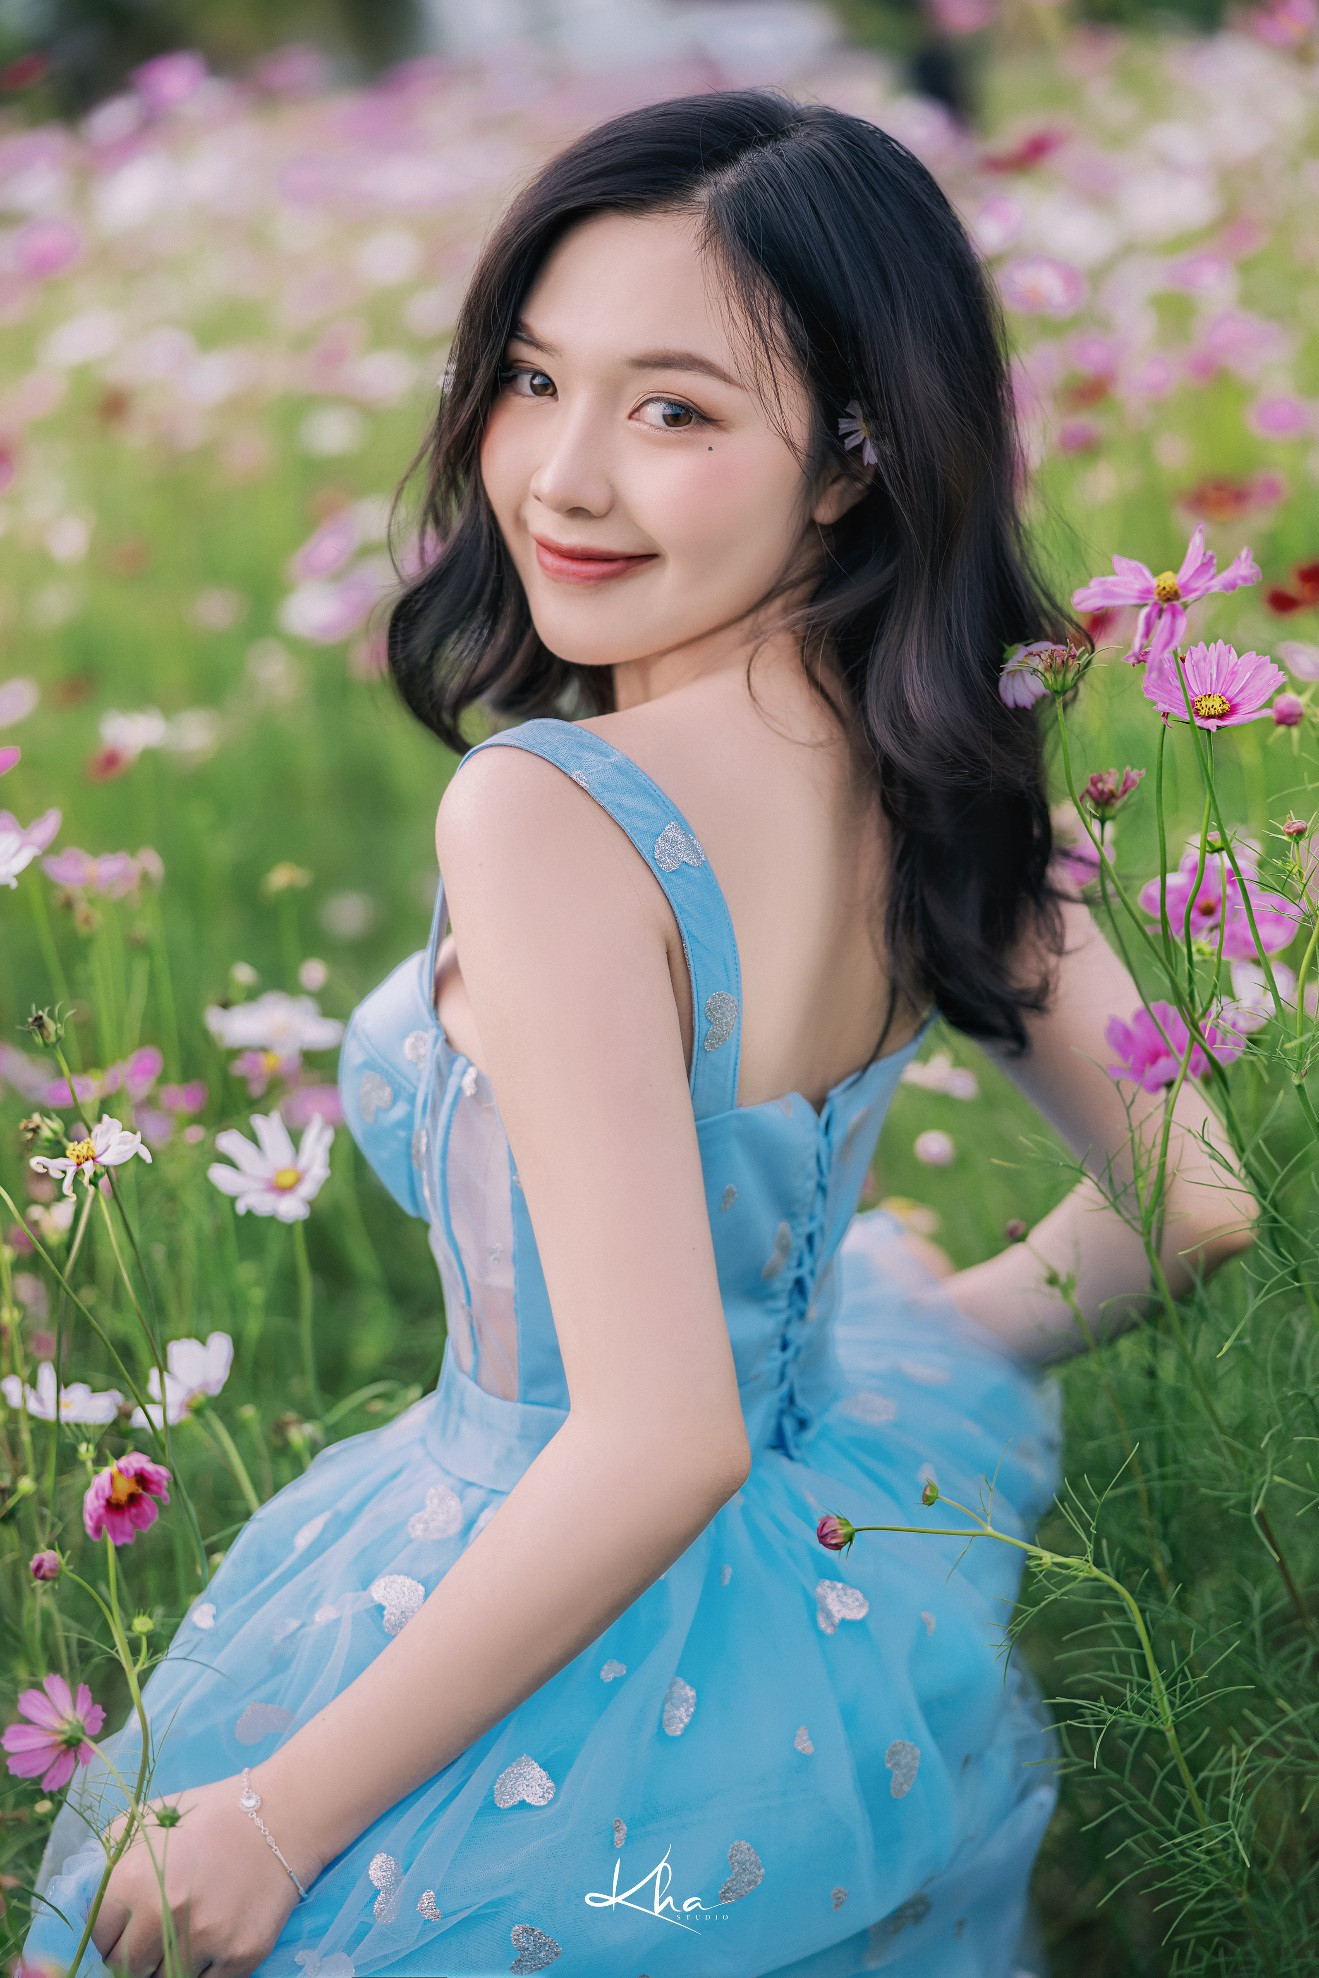 Thiếu nữ Kiên Giang khoe nét xuân thì giữa vườn hoa ngập sắc màu - 3